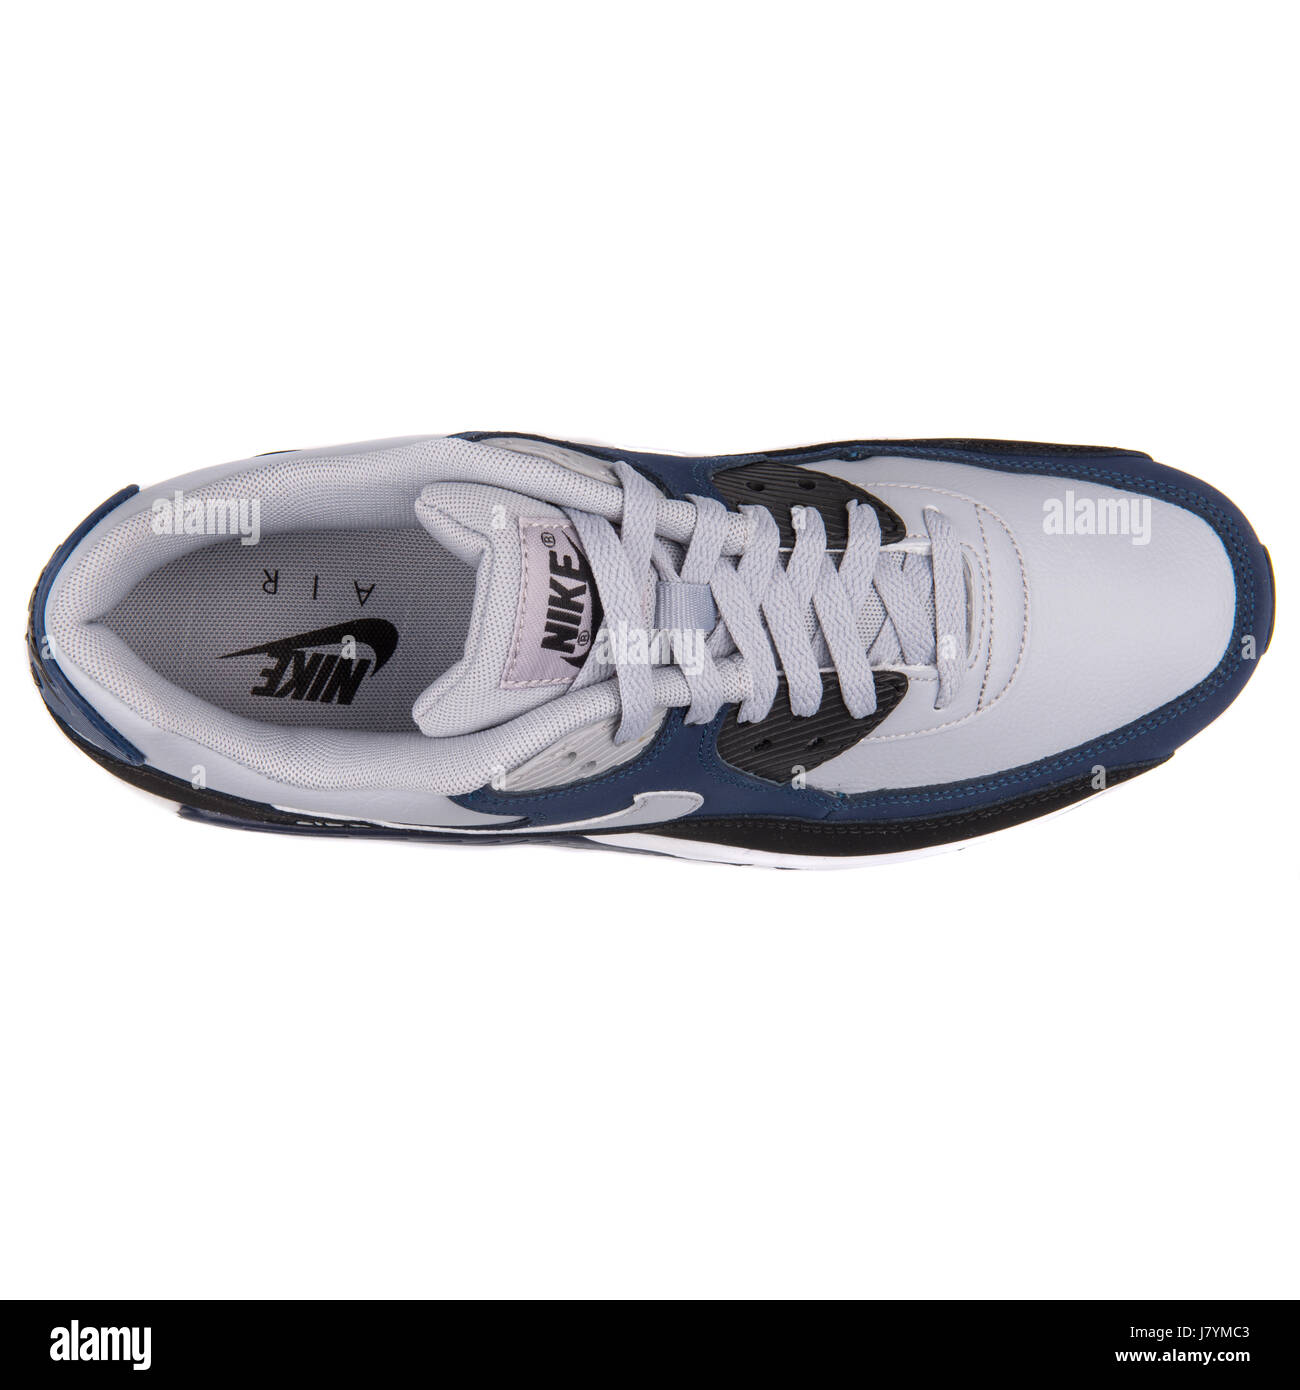 Nike Air Max 90 LTR Gris azul marino hombres zapatillas deportivas - 652980-011 stock - Alamy